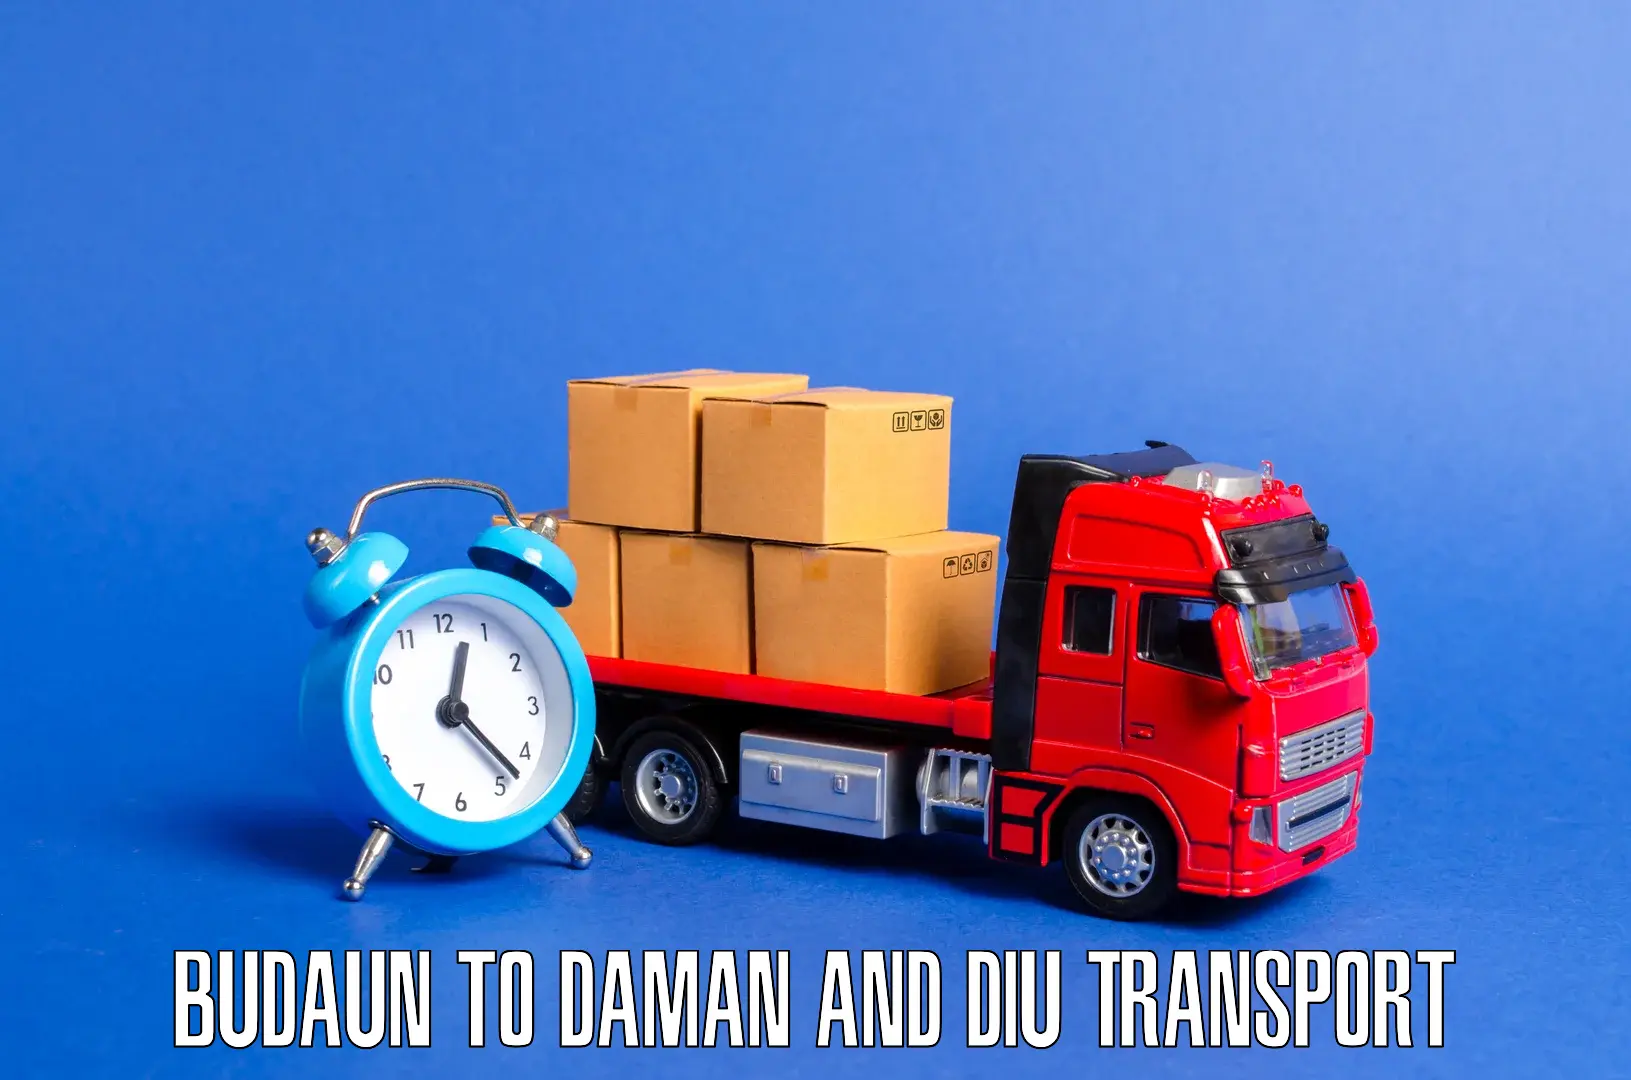 Air freight transport services Budaun to Daman and Diu